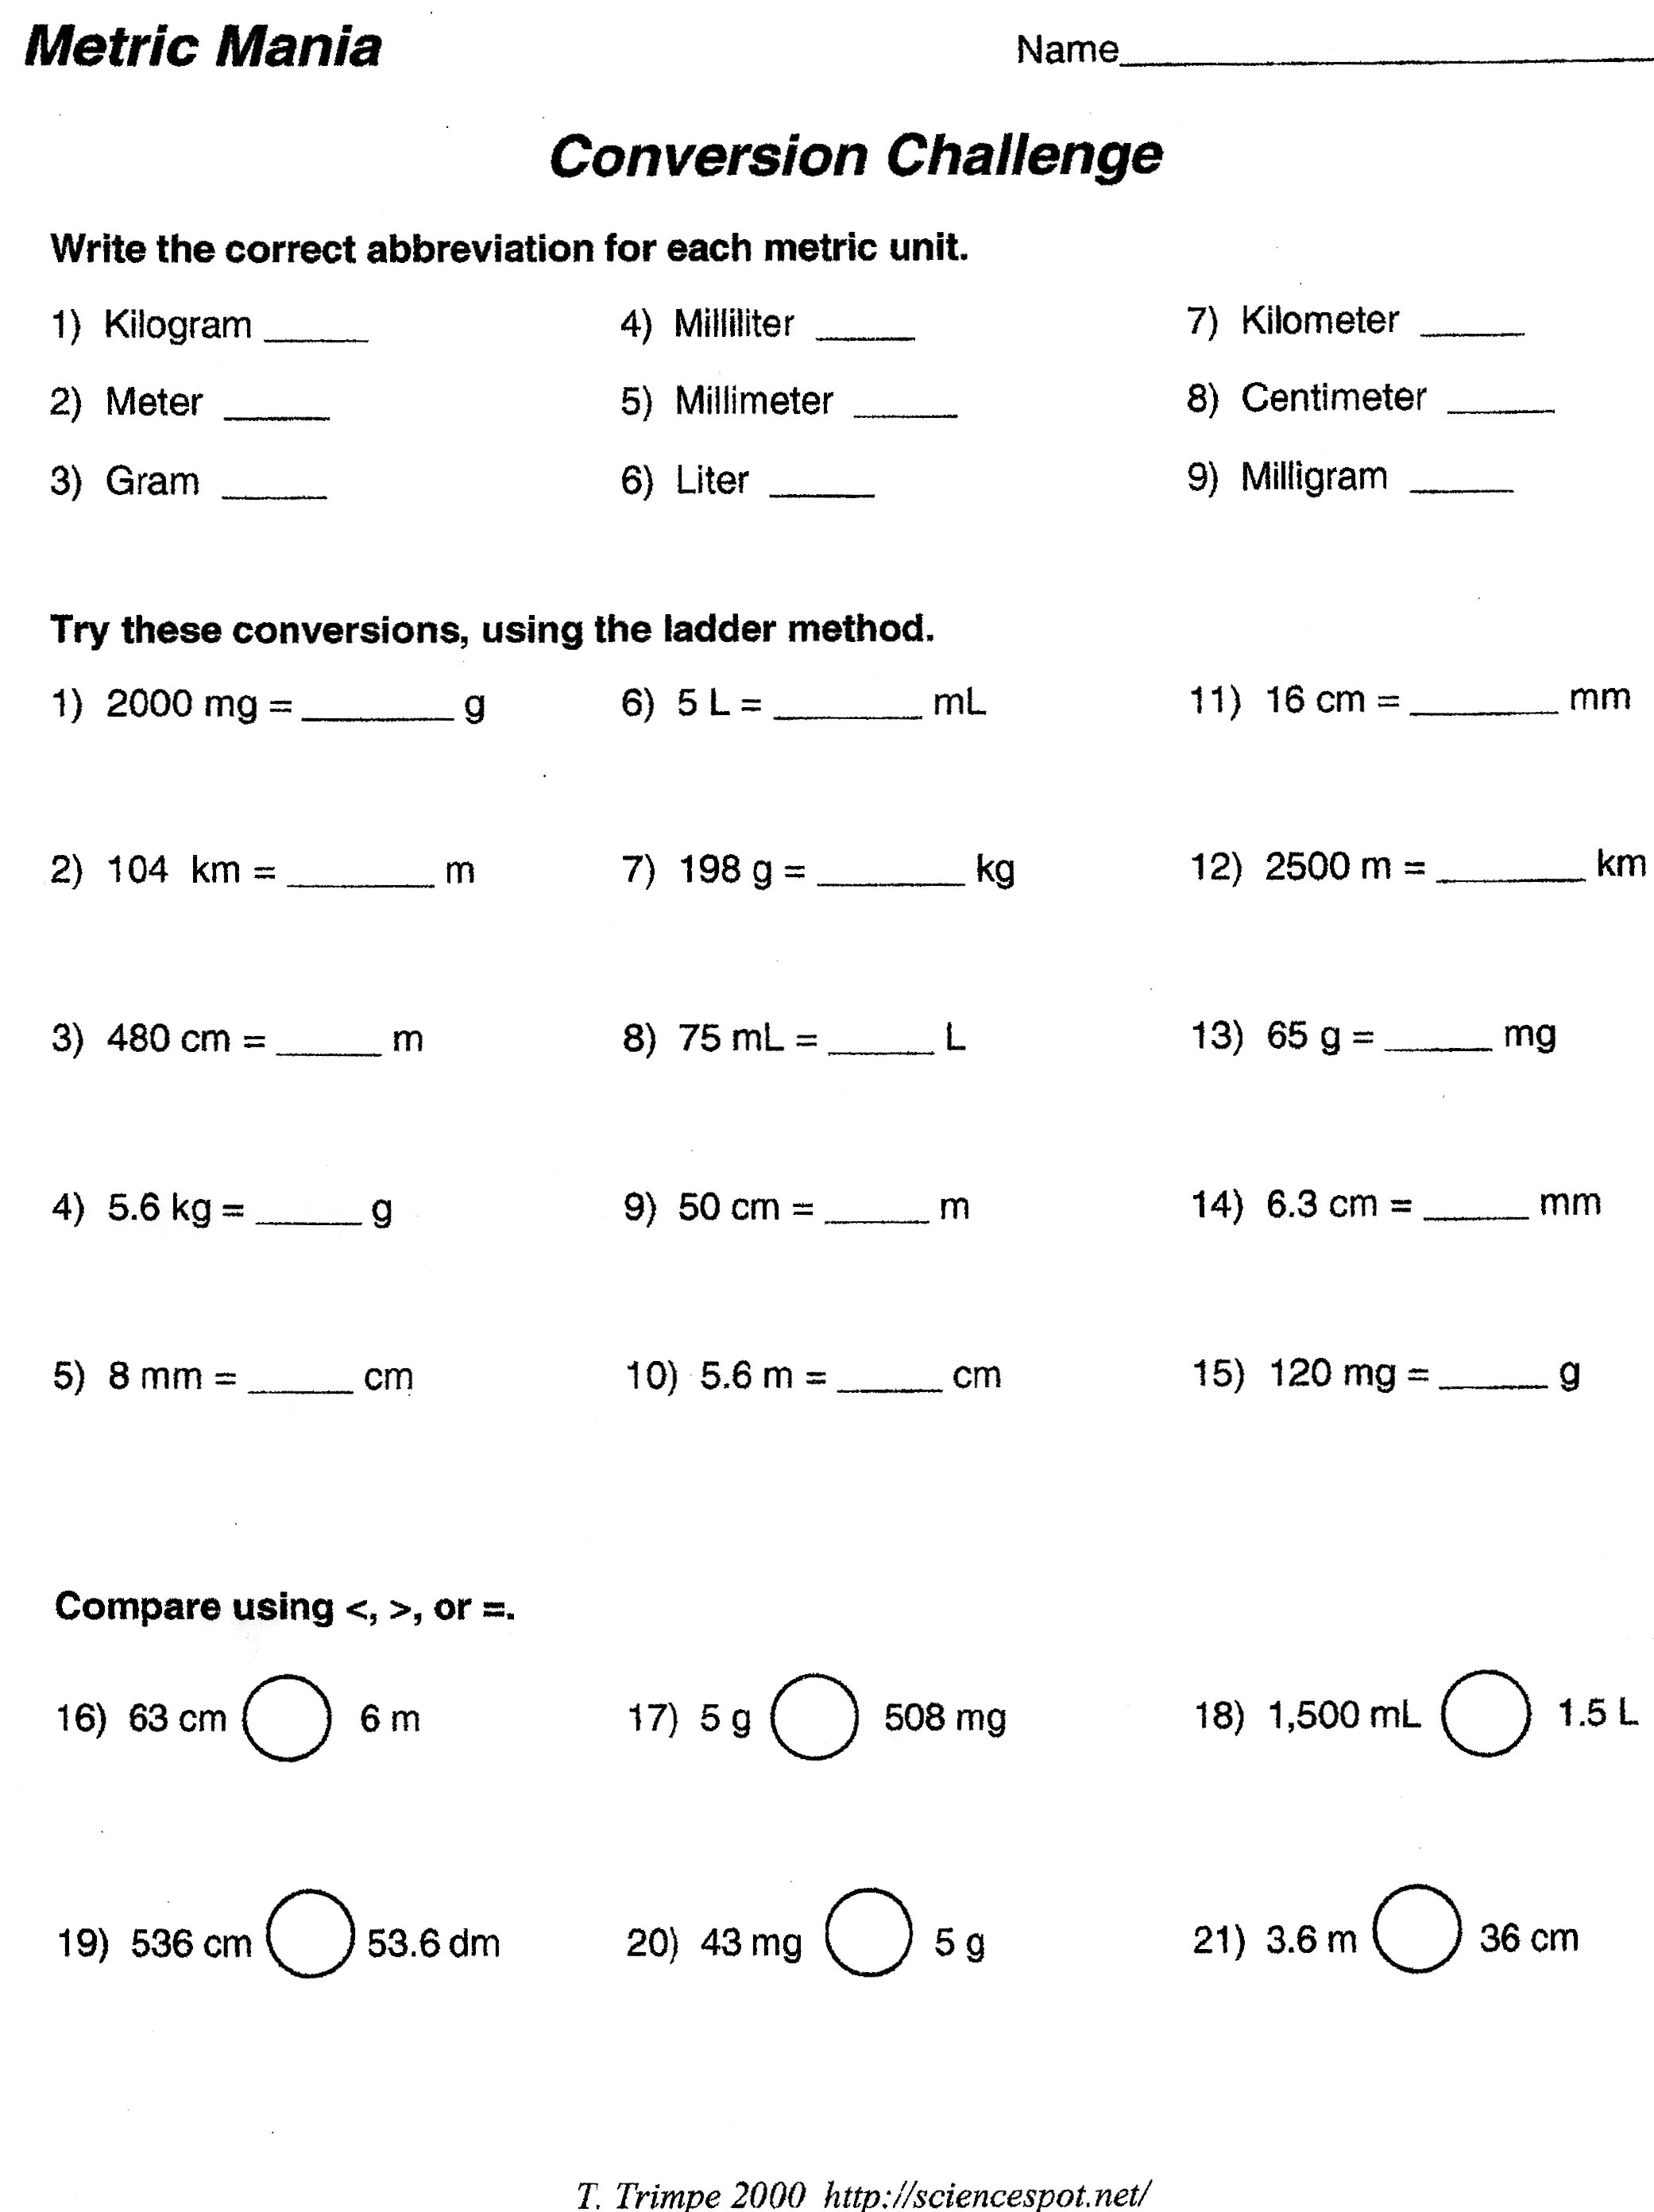 us-metric-conversions-worksheet